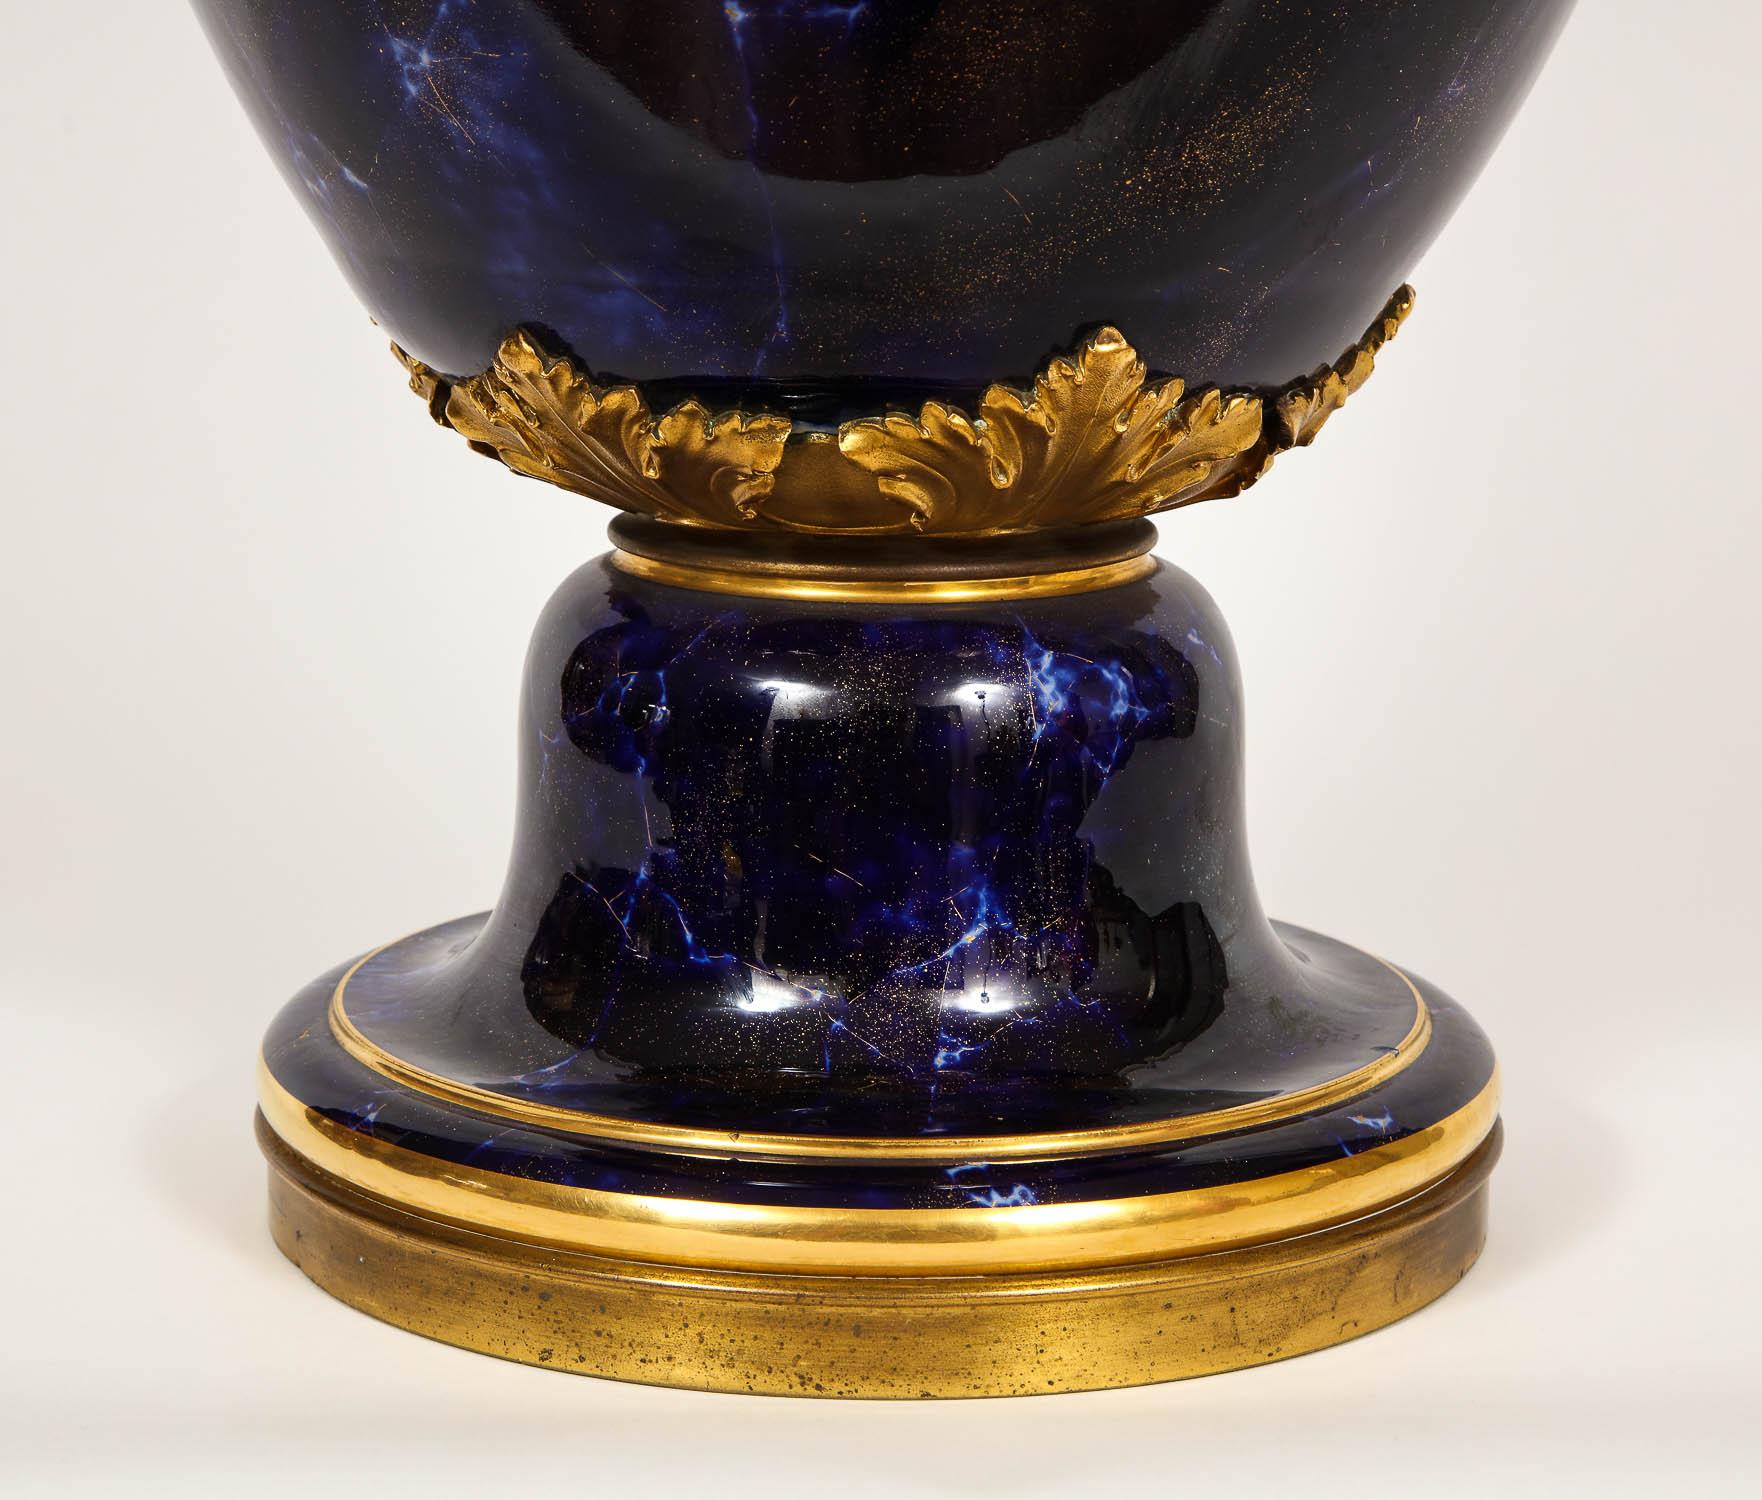 Vase monumental en porcelaine de Sèvres peint en bleu lapis, de la taille d'un palais. Magnifiquement peinte à la main pour imiter la pierre naturelle de Lapis Lazuli. Peint à la main en bleu de cobalt royal avec des veines blanches et des reflets